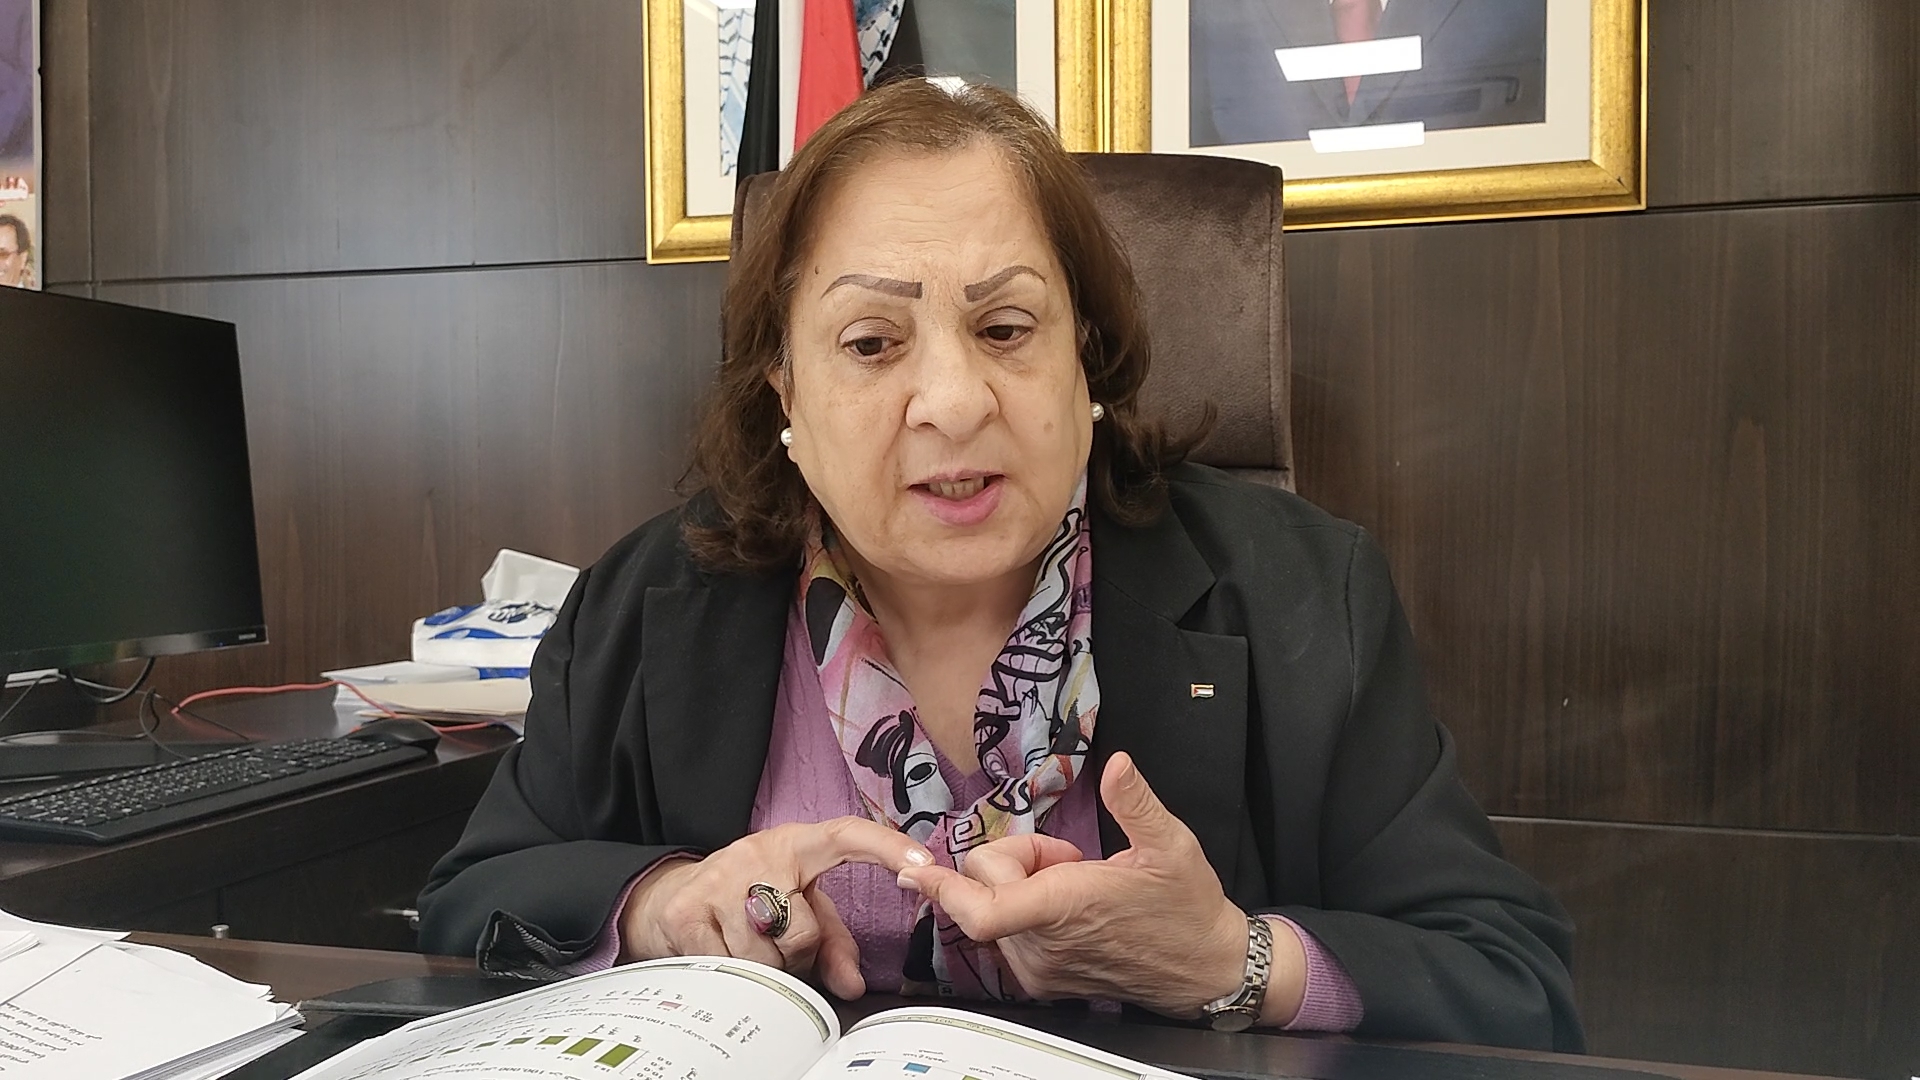 وزيرة الصحة الفلسطينية خلال مقابلة حول مرض السرطان.jpeg